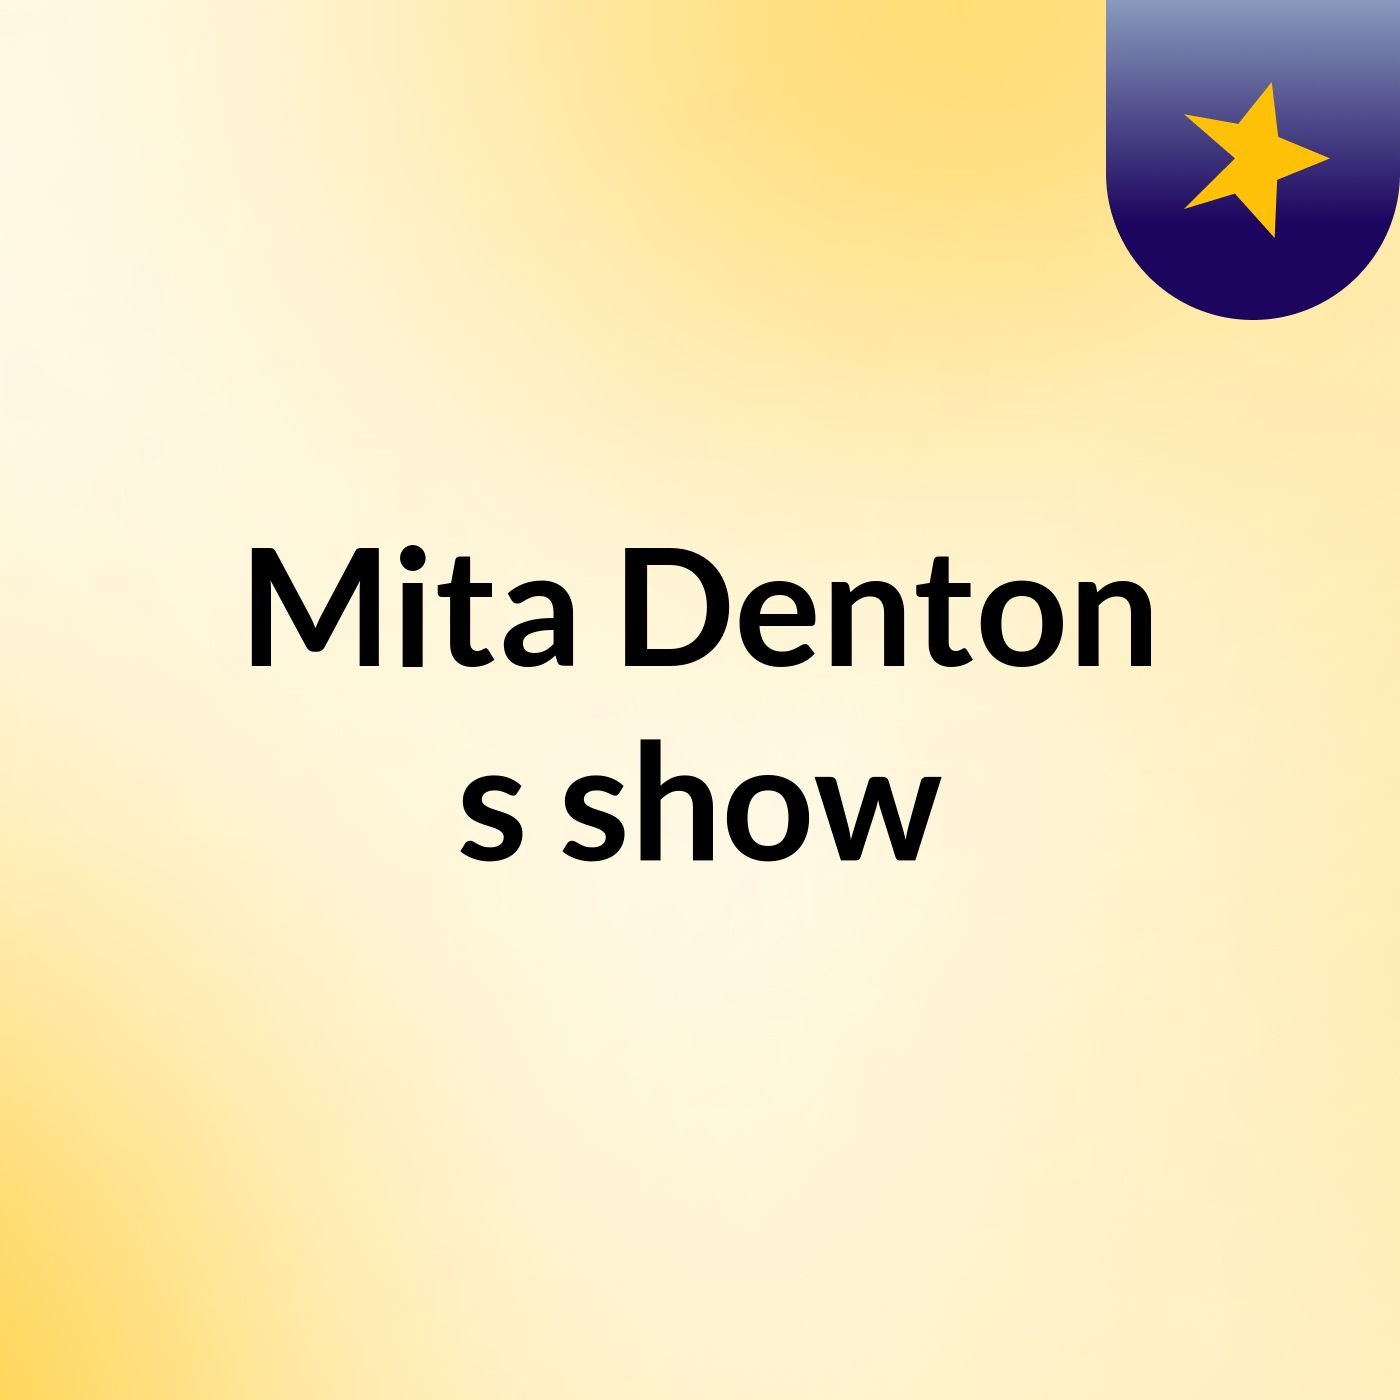 Mita Denton's show